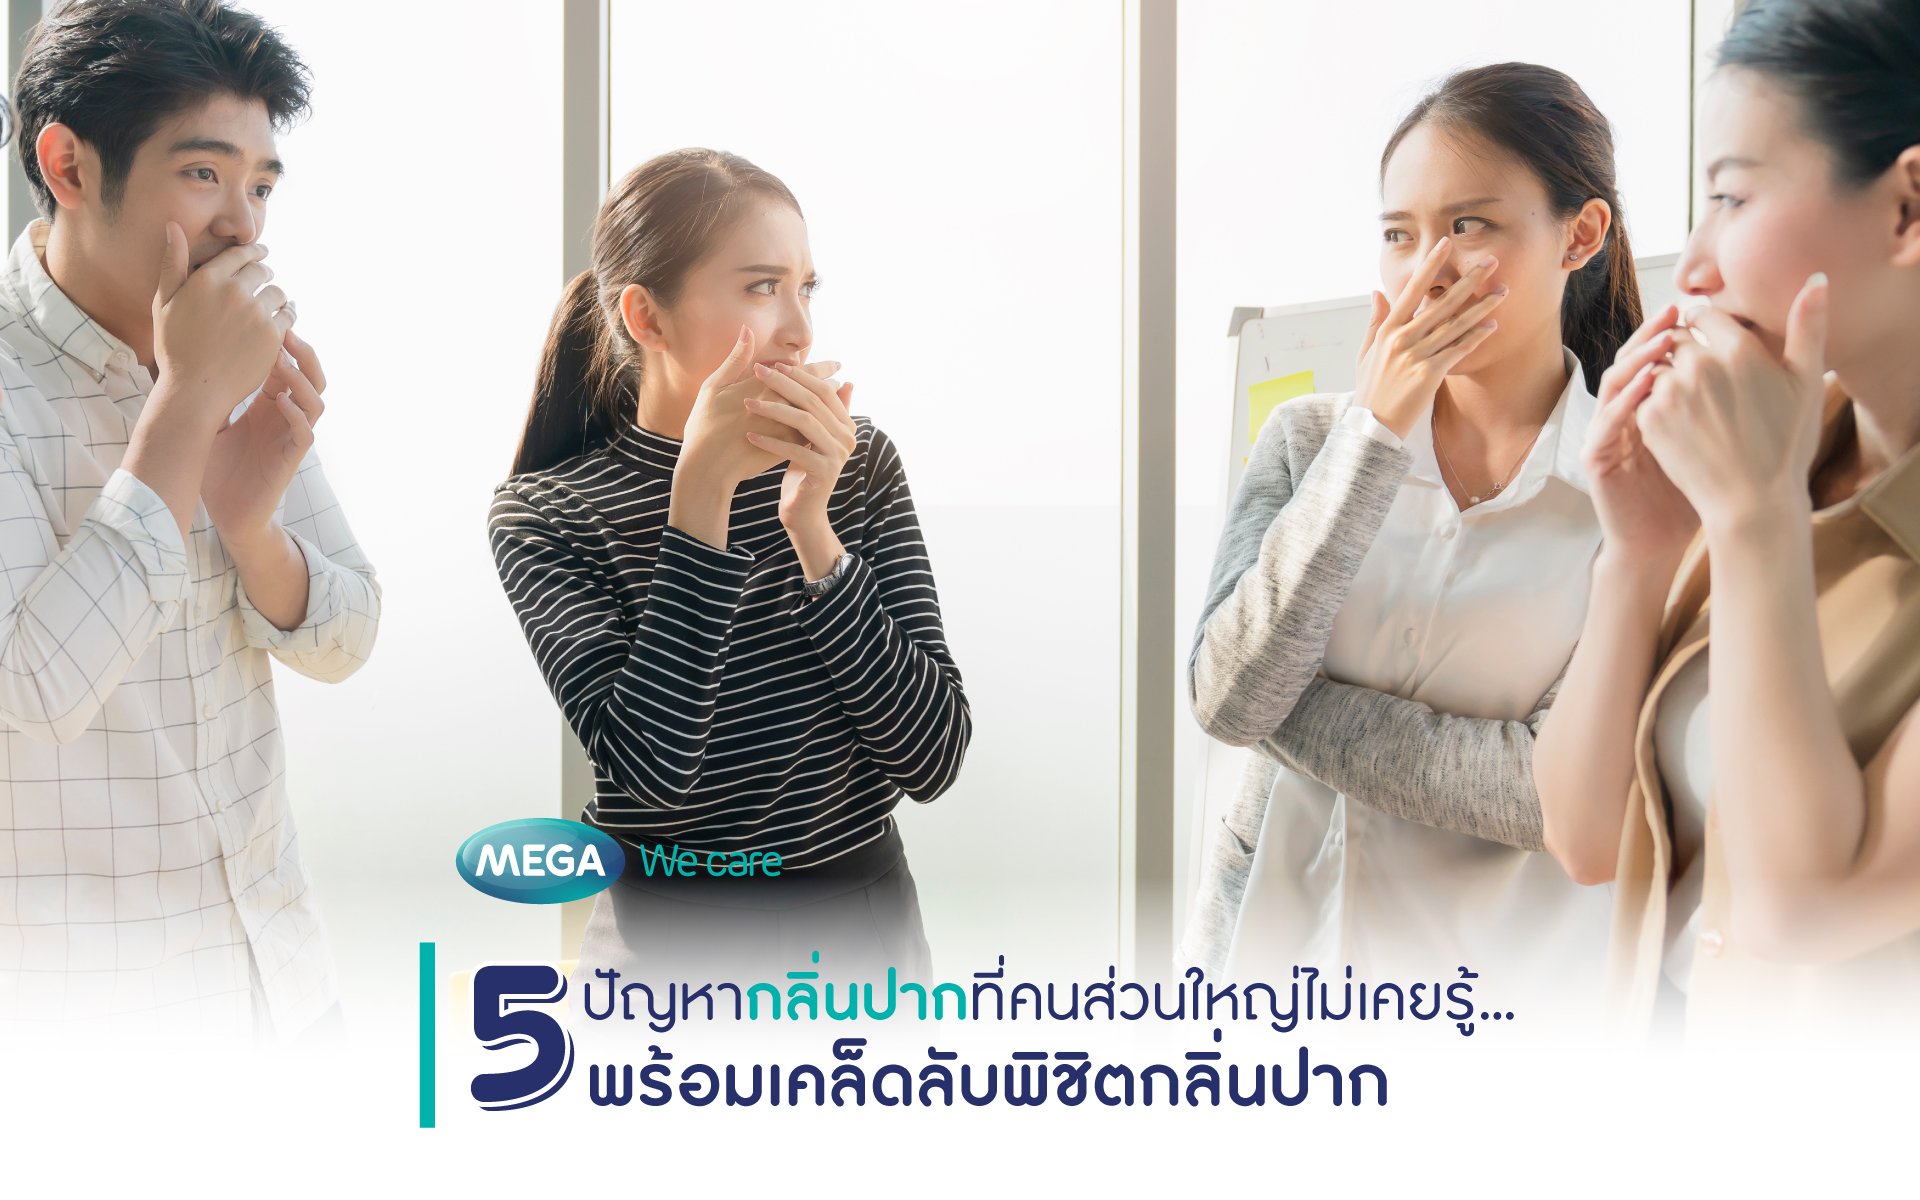 5 ปัญหากลิ่นปากที่คนส่วนใหญ่ไม่เคยรู้... พร้อมเคล็ดลับพิชิตกลิ่นปาก